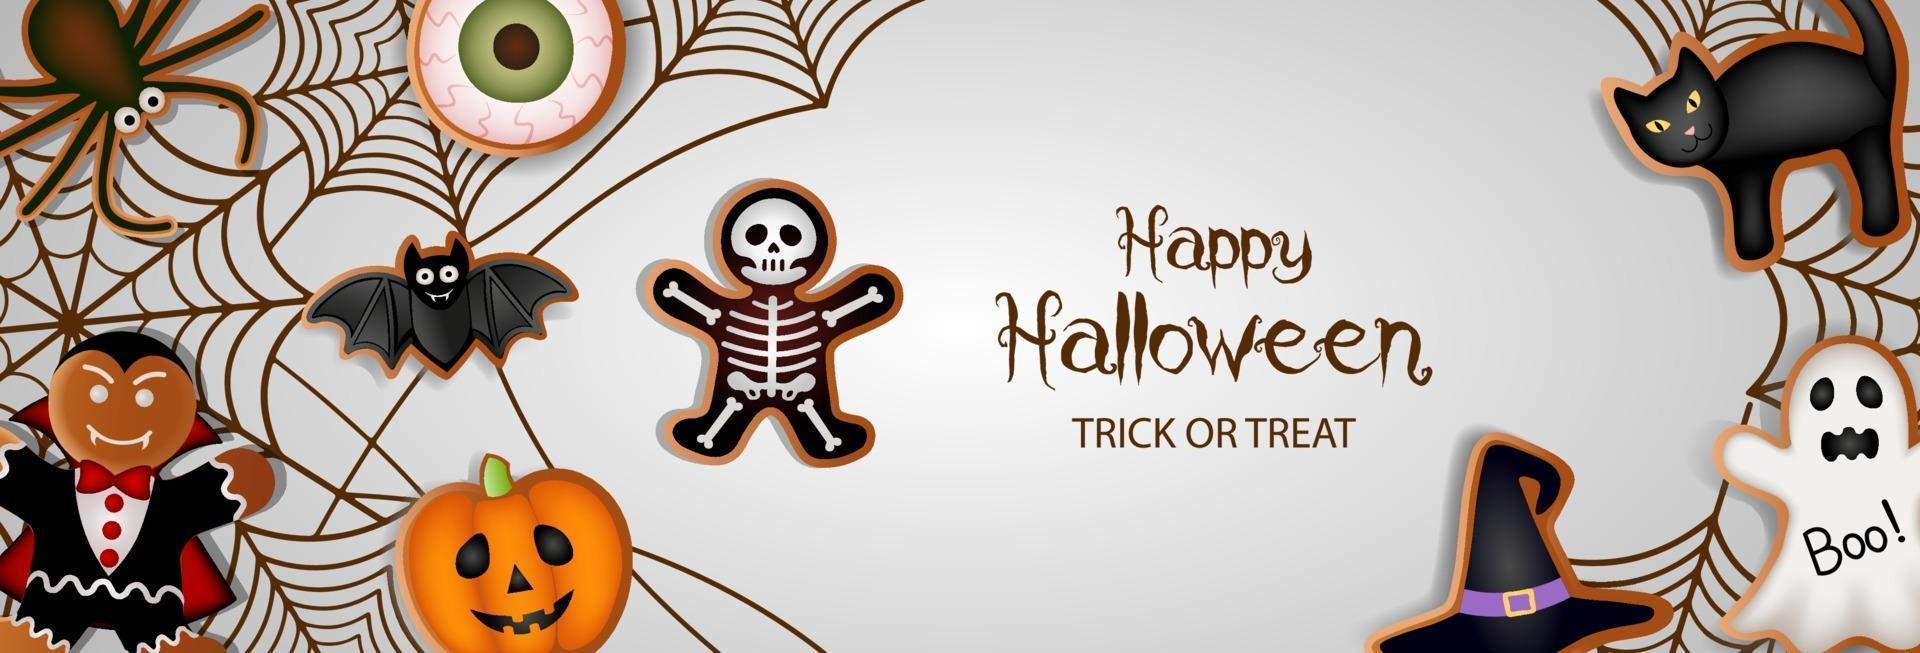 happy halloween-banner met peperkoekkoekjes en spinnenwebben vector